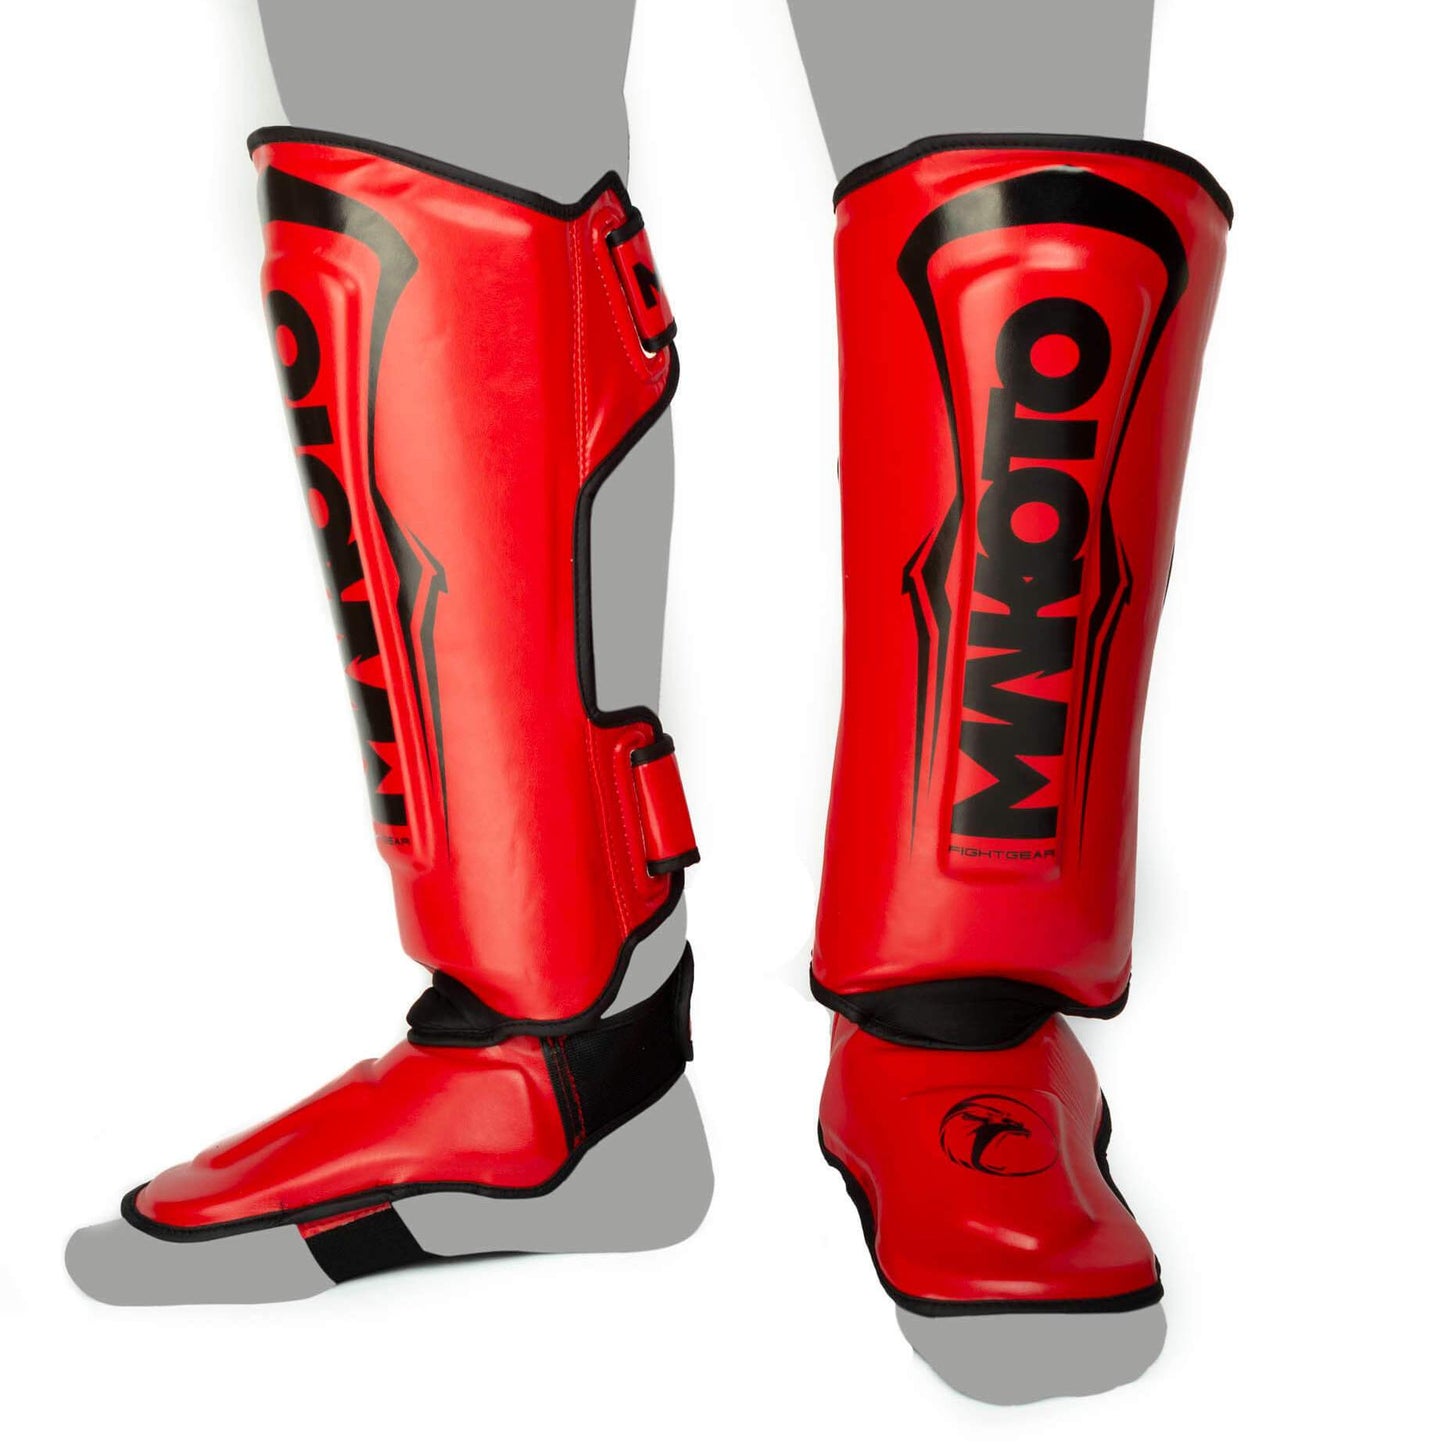 Canilleras de Muay Thai Makoto M1 Rojo - 100% Poliuretano